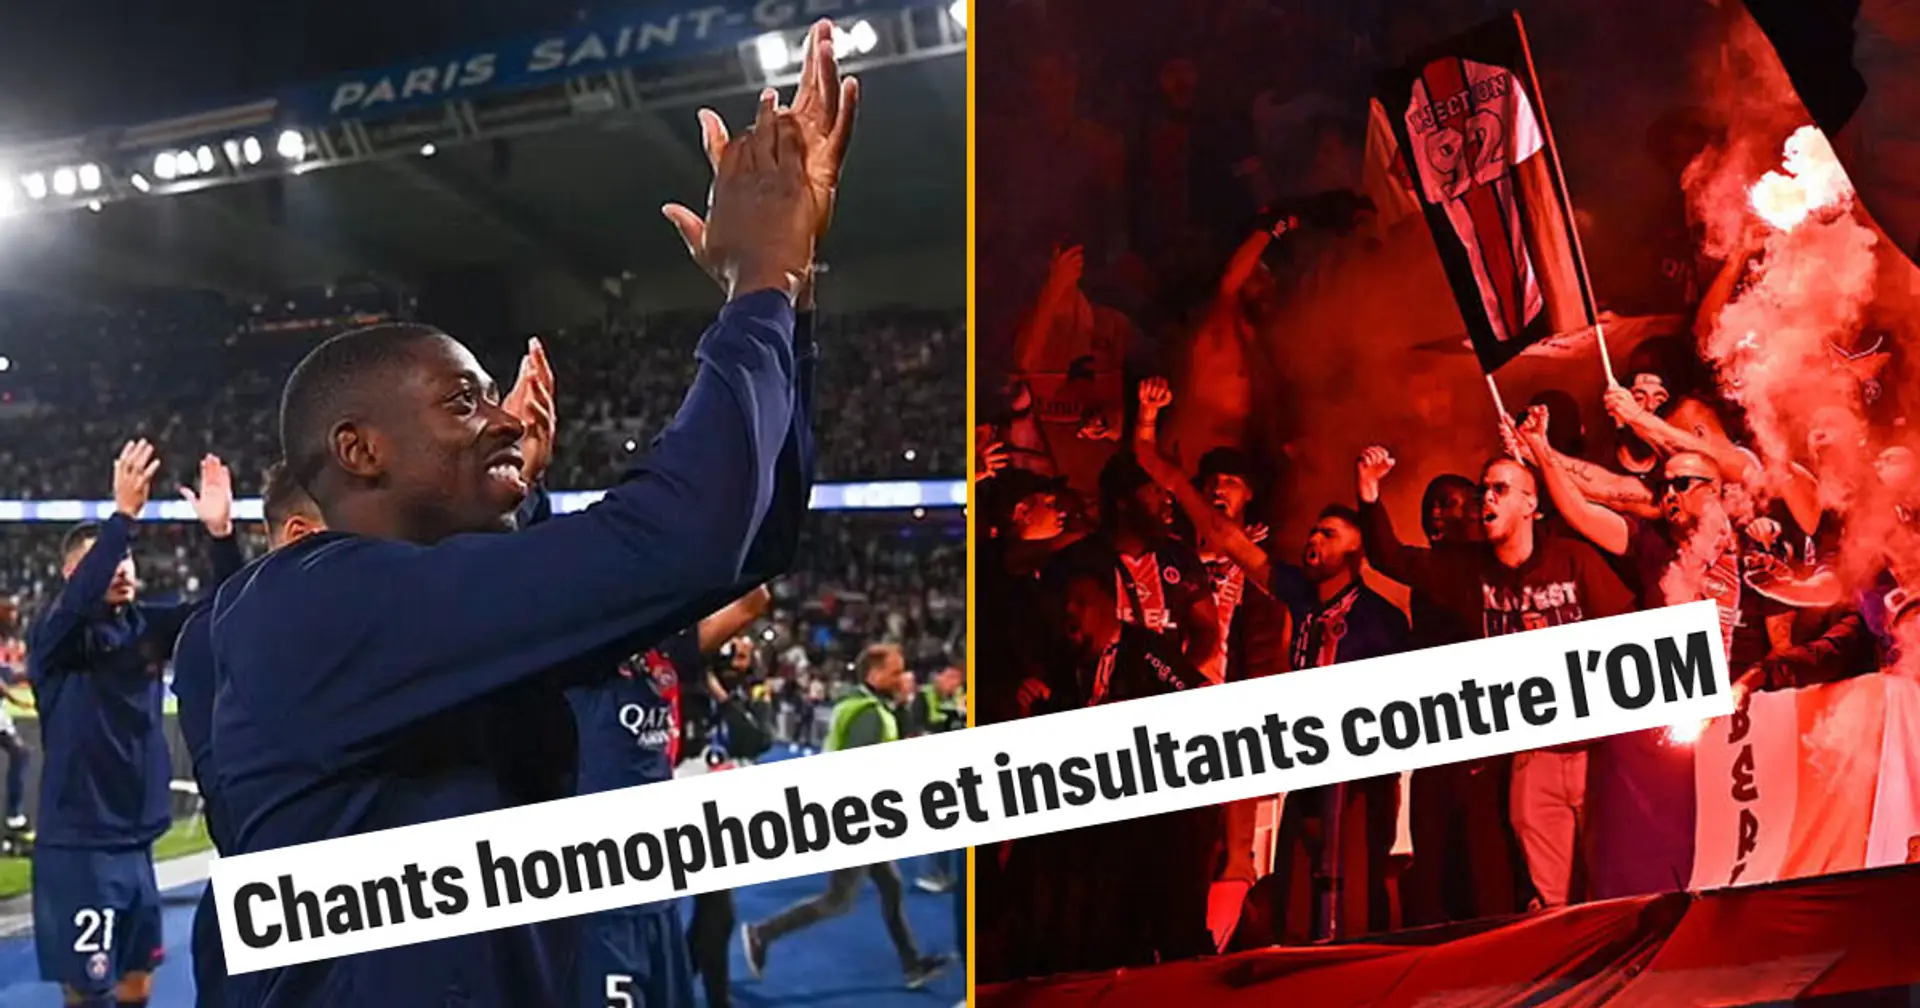 0 goals, 1 homophobic scandal: Dembele on the brink of 4-game ban